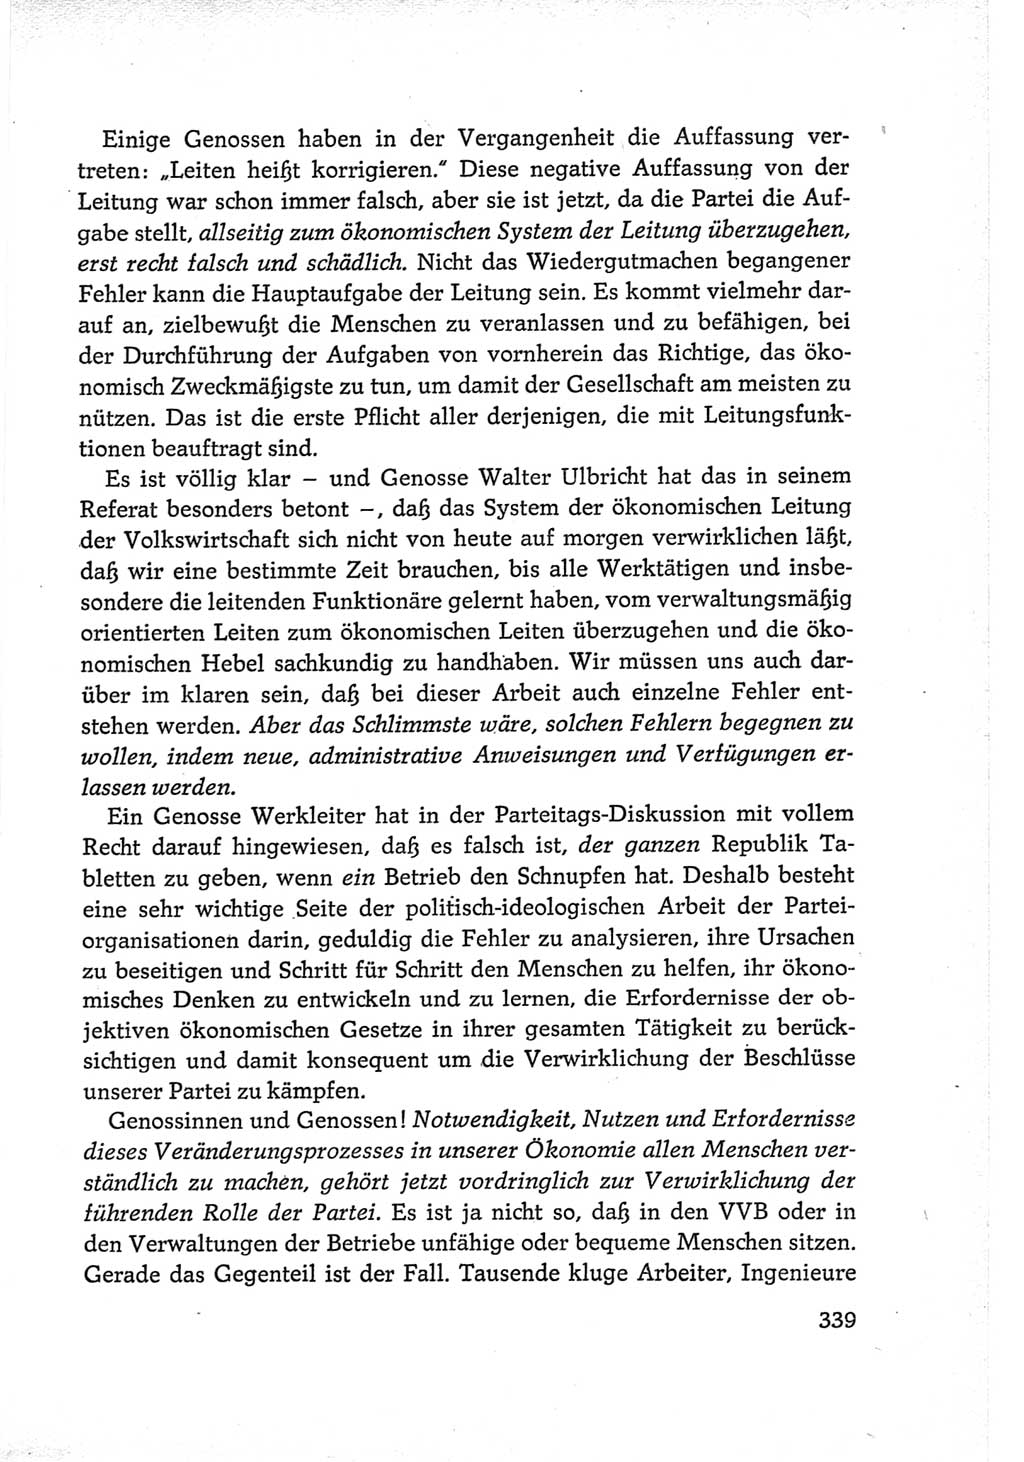 Protokoll der Verhandlungen des Ⅵ. Parteitages der Sozialistischen Einheitspartei Deutschlands (SED) [Deutsche Demokratische Republik (DDR)] 1963, Band Ⅲ, Seite 339 (Prot. Verh. Ⅵ. PT SED DDR 1963, Bd. Ⅲ, S. 339)